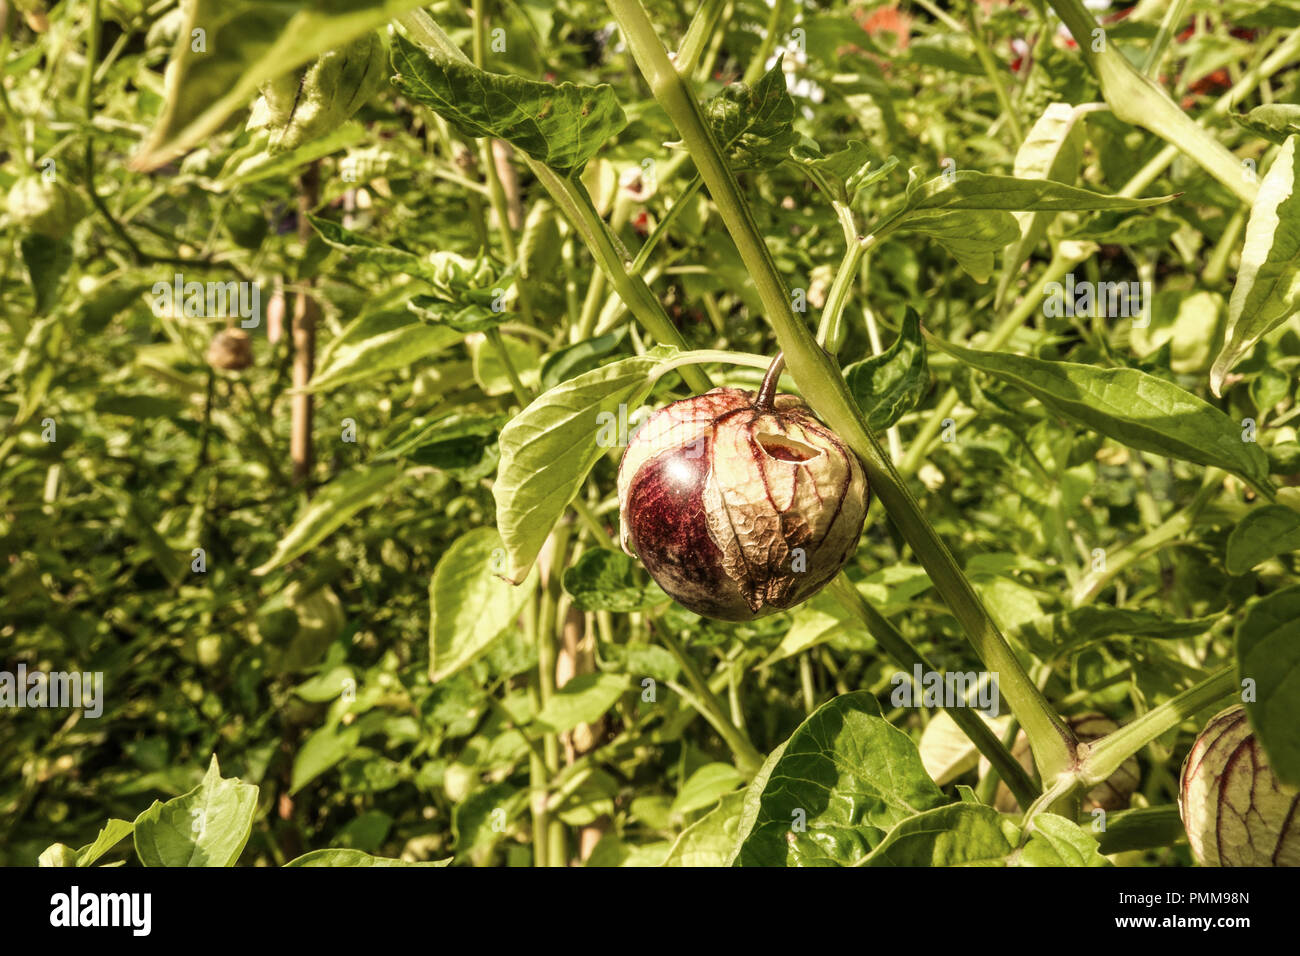 Mexican husk tomatillo - Physalis ixocarpa crescente sulla vite Foto Stock